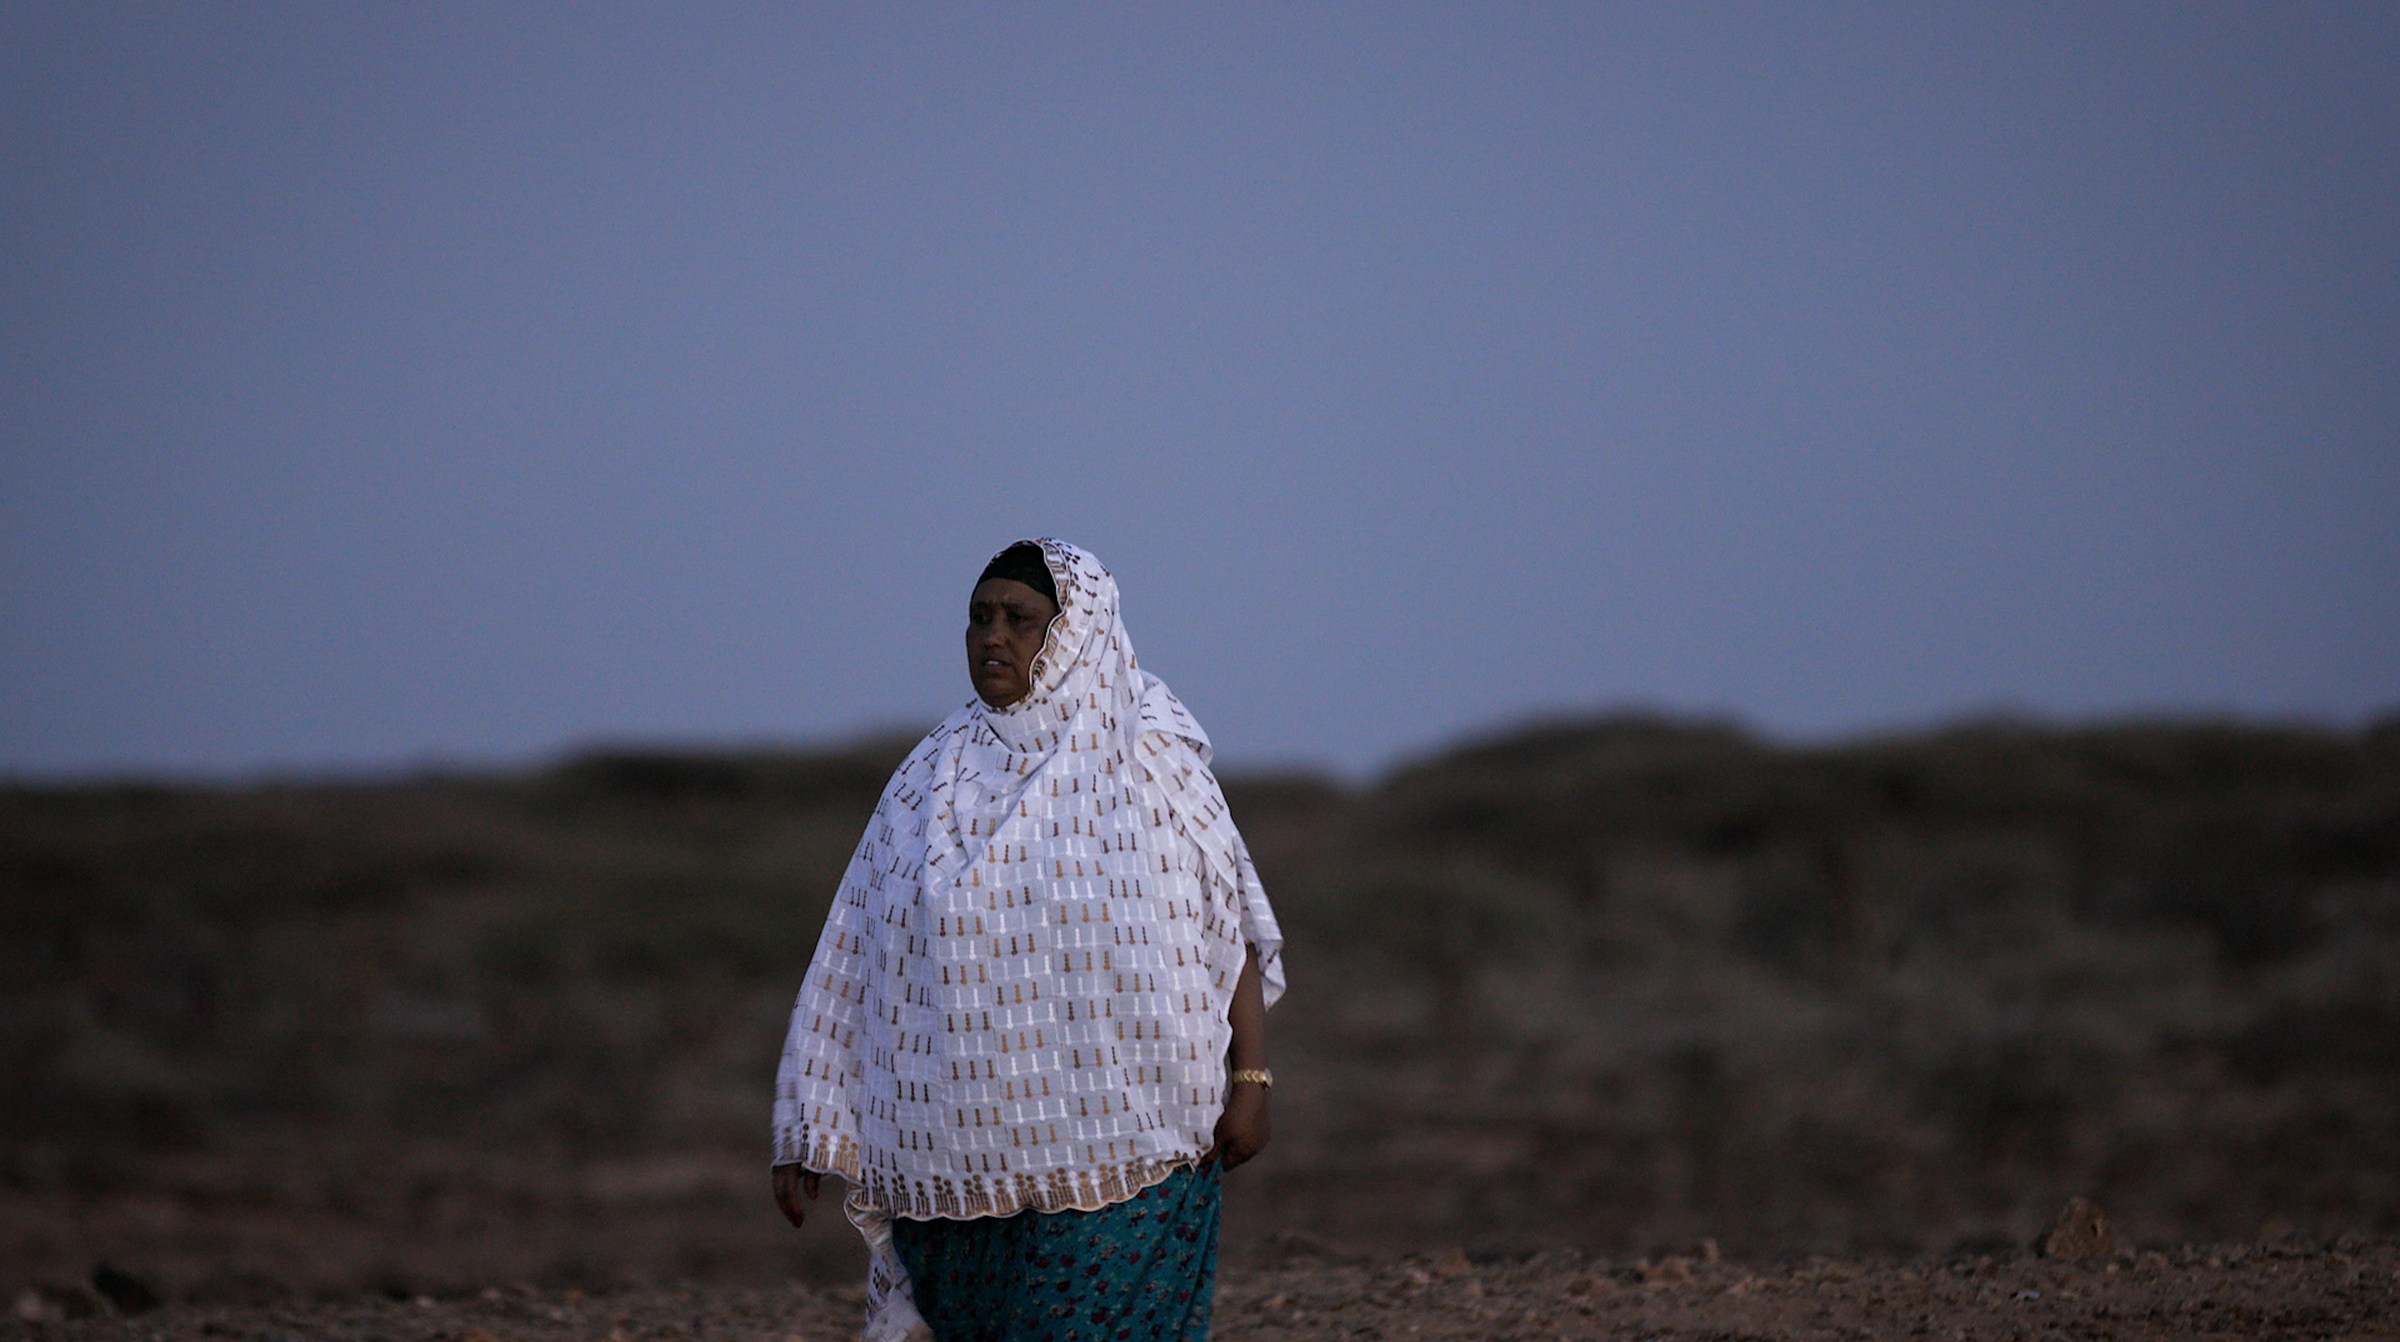 Nuria Gollo, nativa de Gabra y activista de derechos humanos, víctima del matrimonio infantil y sobreviviente de la MGF, ha hecho de su vida el trabajo de poner fin al matrimonio infantil en su comunidad.